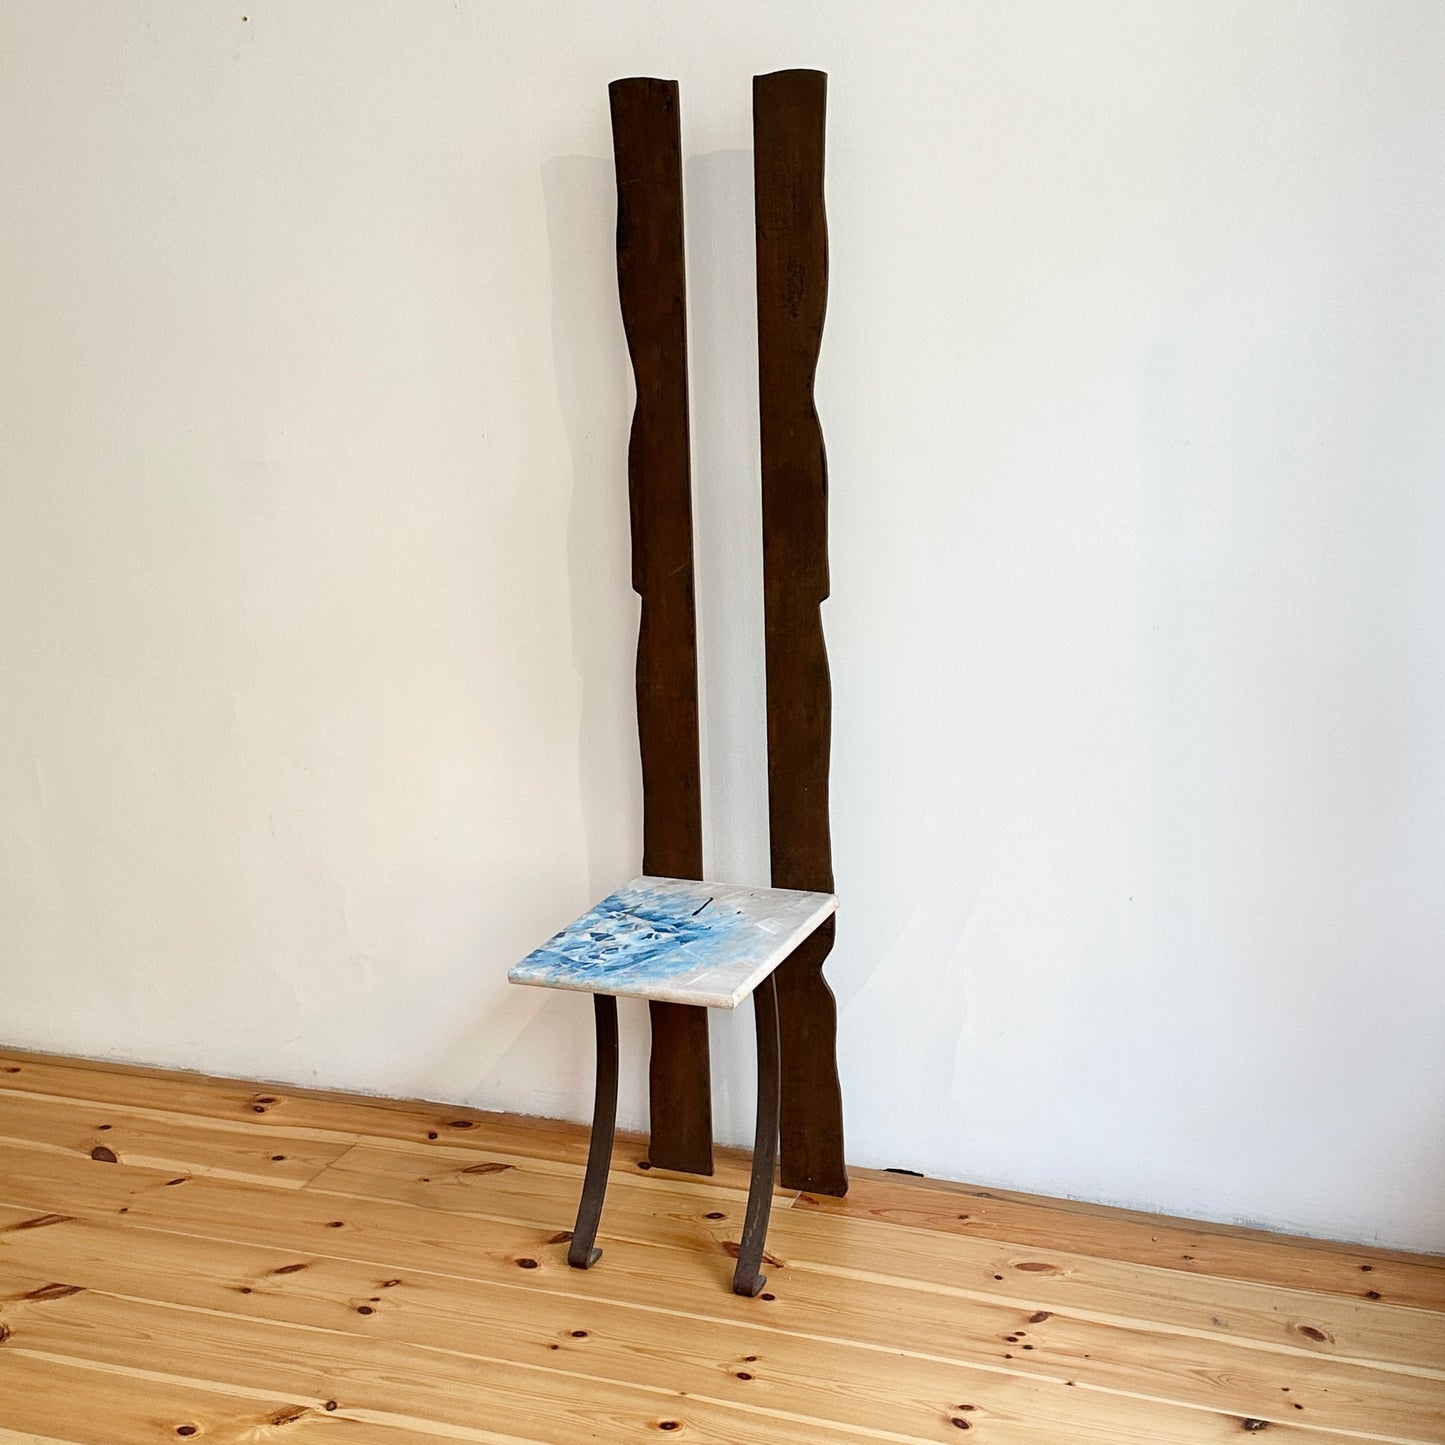 Milos Grass chair/sculpture